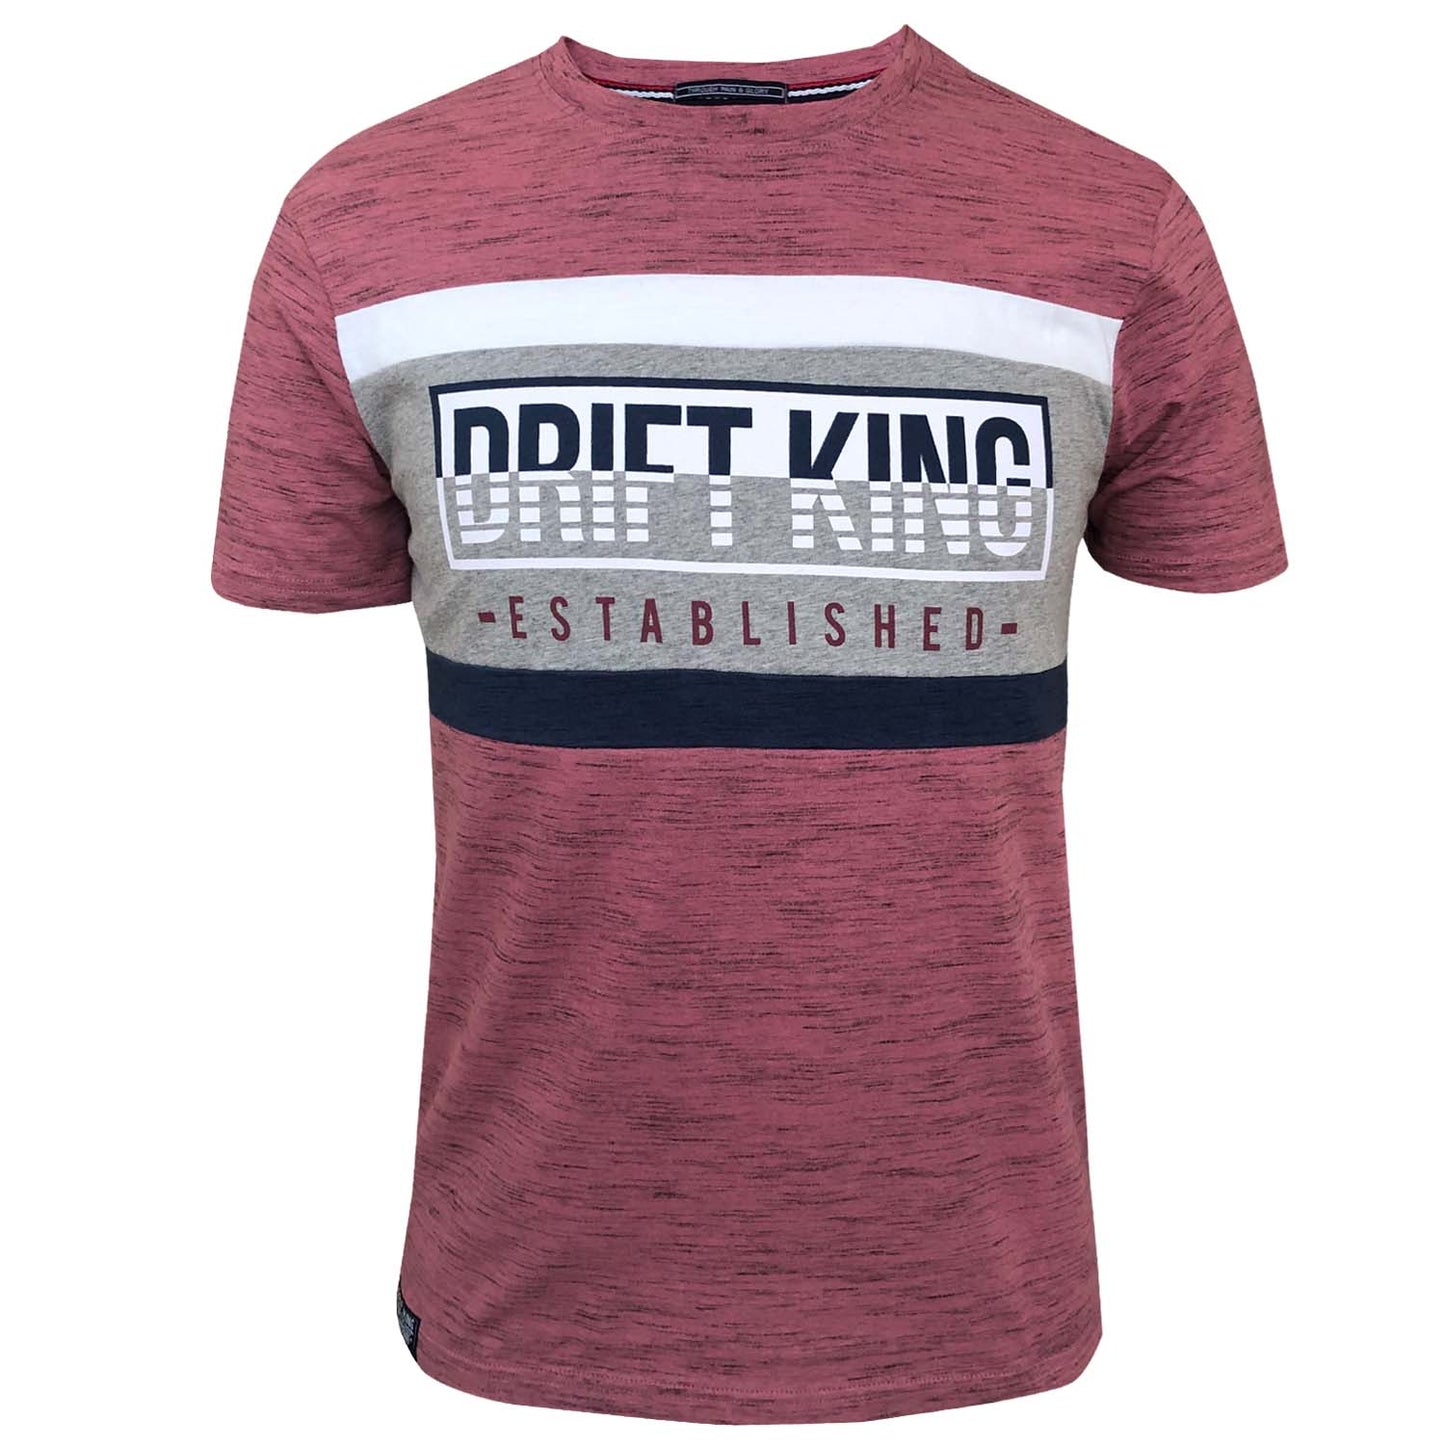 Drift King - Lance T-Shirt - LabelledUp.com